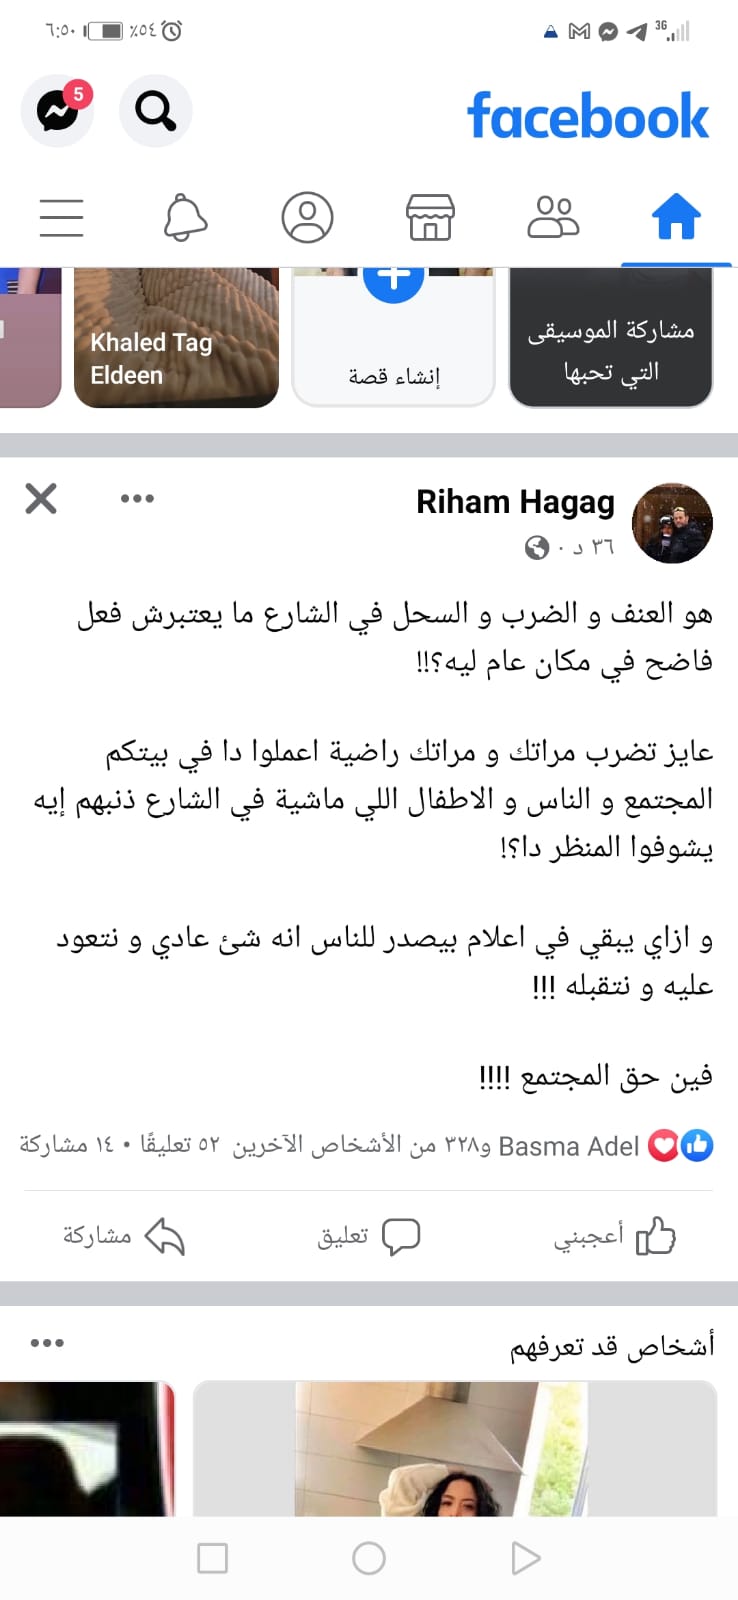 ريهام حجاج عن عريس الإسماعيلية بعد ضرب زوجته الأطفال فى الشارع ذنبهم إيه